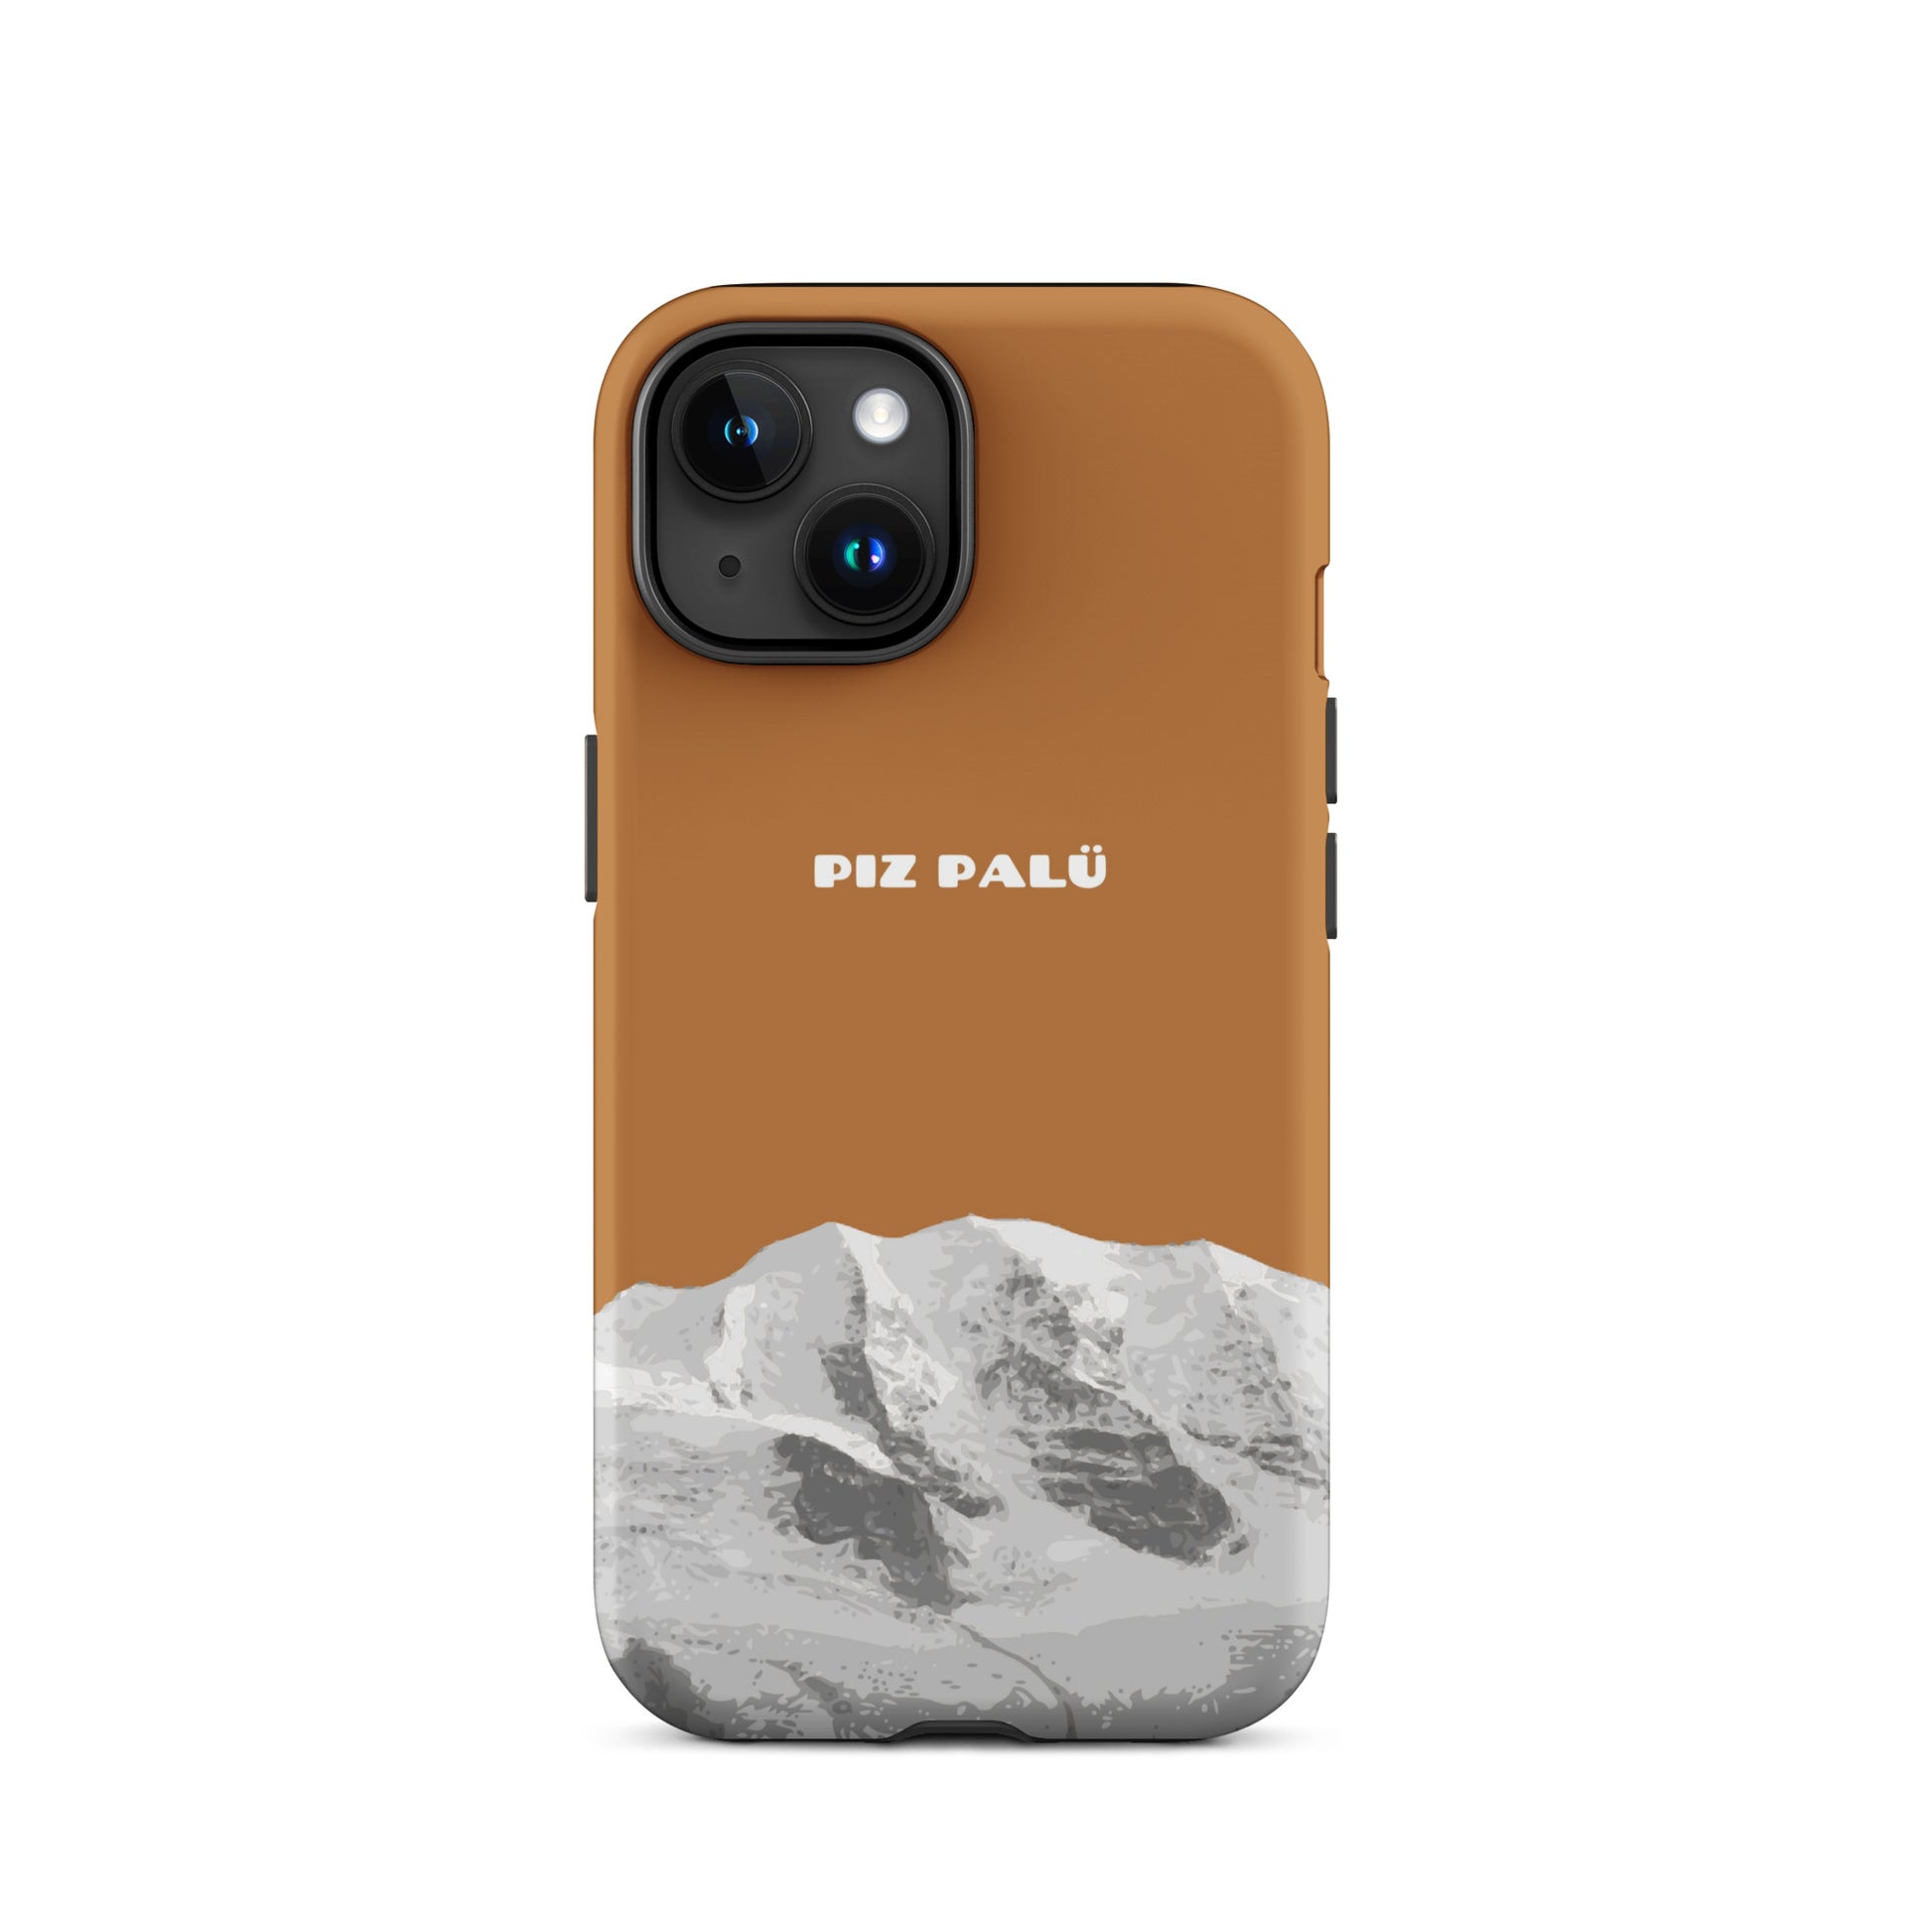 Hülle für das iPhone 15 von Apple in der Farbe Kupfer, dass den Piz Palü in Graubünden zeigt.